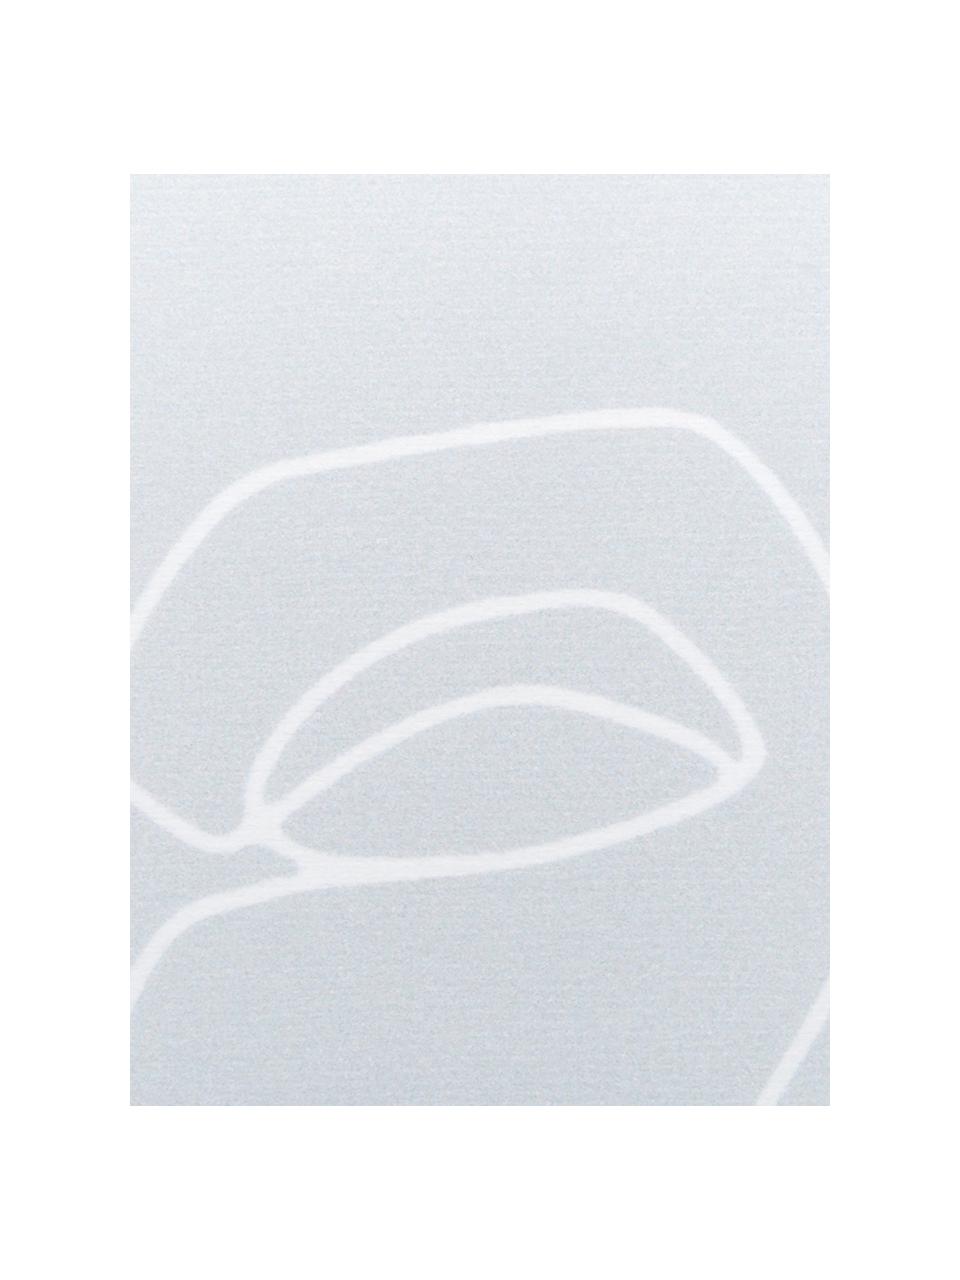 Tenká plážová osuška s abstraktní kresbou Faces, 55 % polyester, 45 % bavlna
Velmi nízká gramáž, 340 g/m², Šedá, bílá, Š 70 cm, D 150 cm